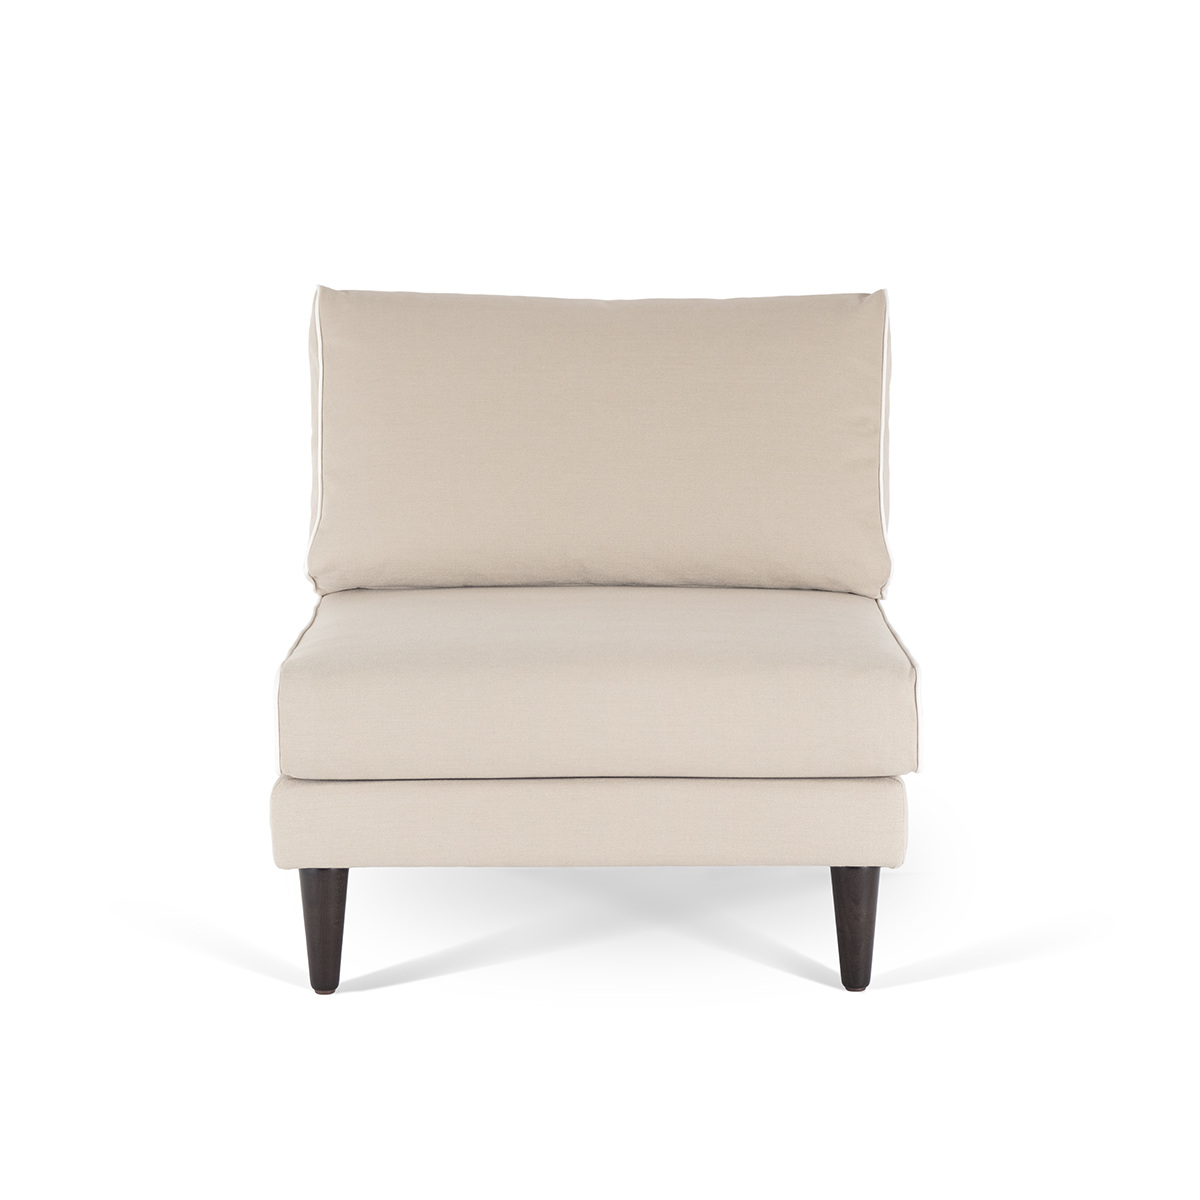 Flip Chair Noa, Beige / White - H80 x W80 x D75 cm - Cotton / Wood - image 2